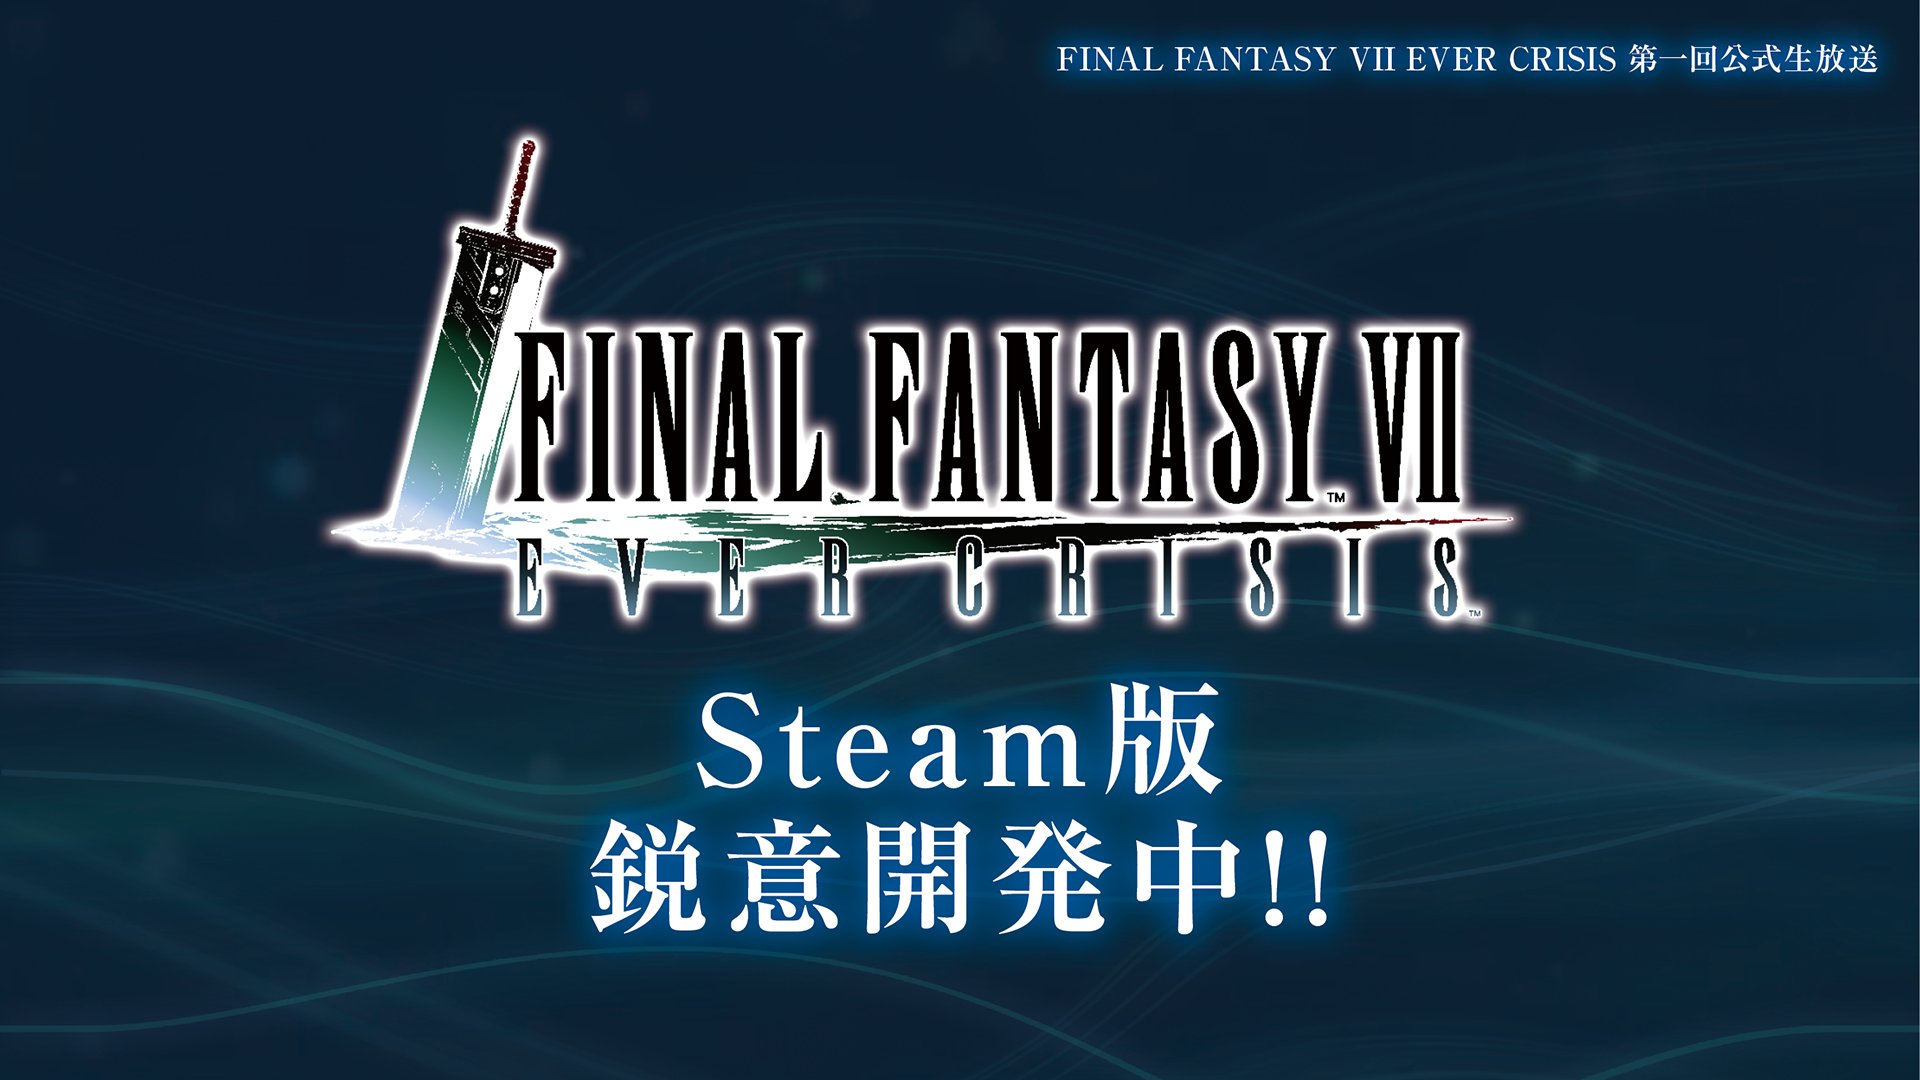 Square Enix y Applibot confirmaron que estan trabajando en una versión para PC del juego móvil Final Fantasy VII: Ever Crisis, saldrá en Steam.